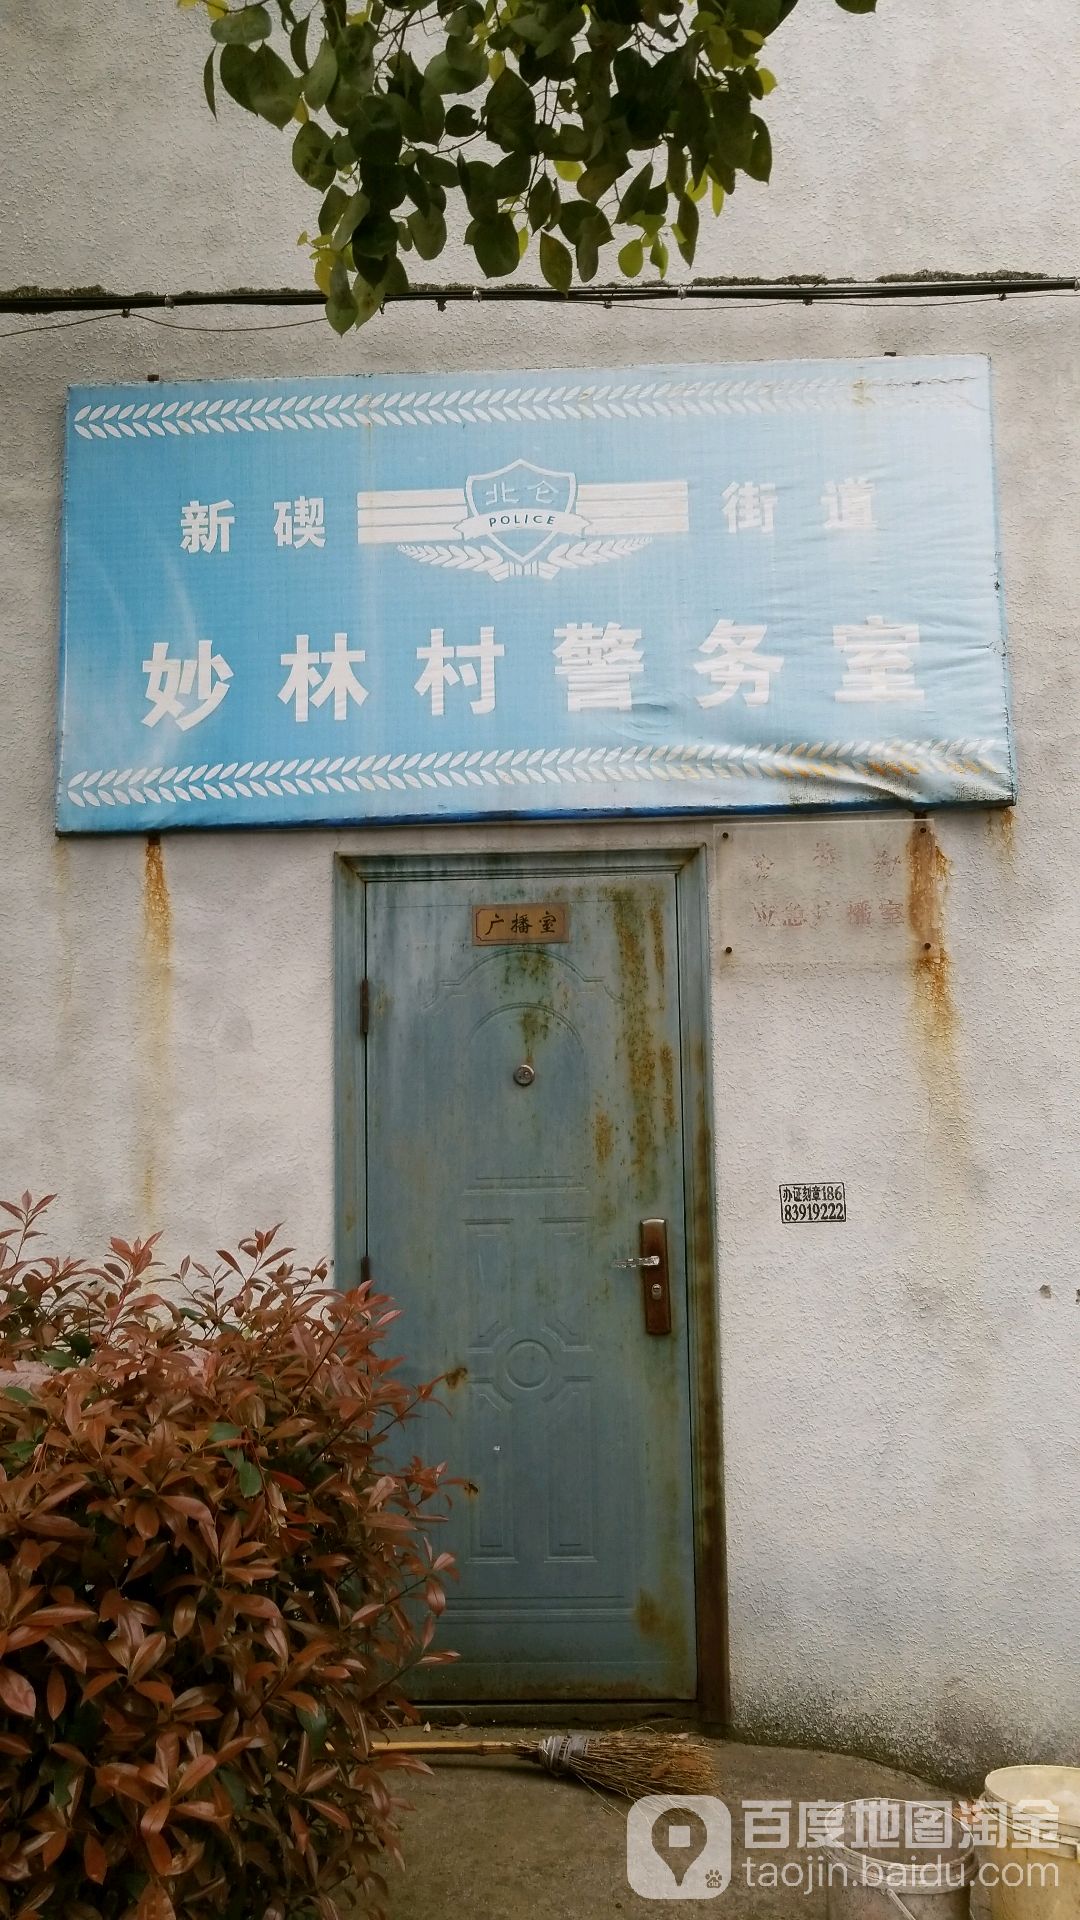 新碶街道妙林村警務室